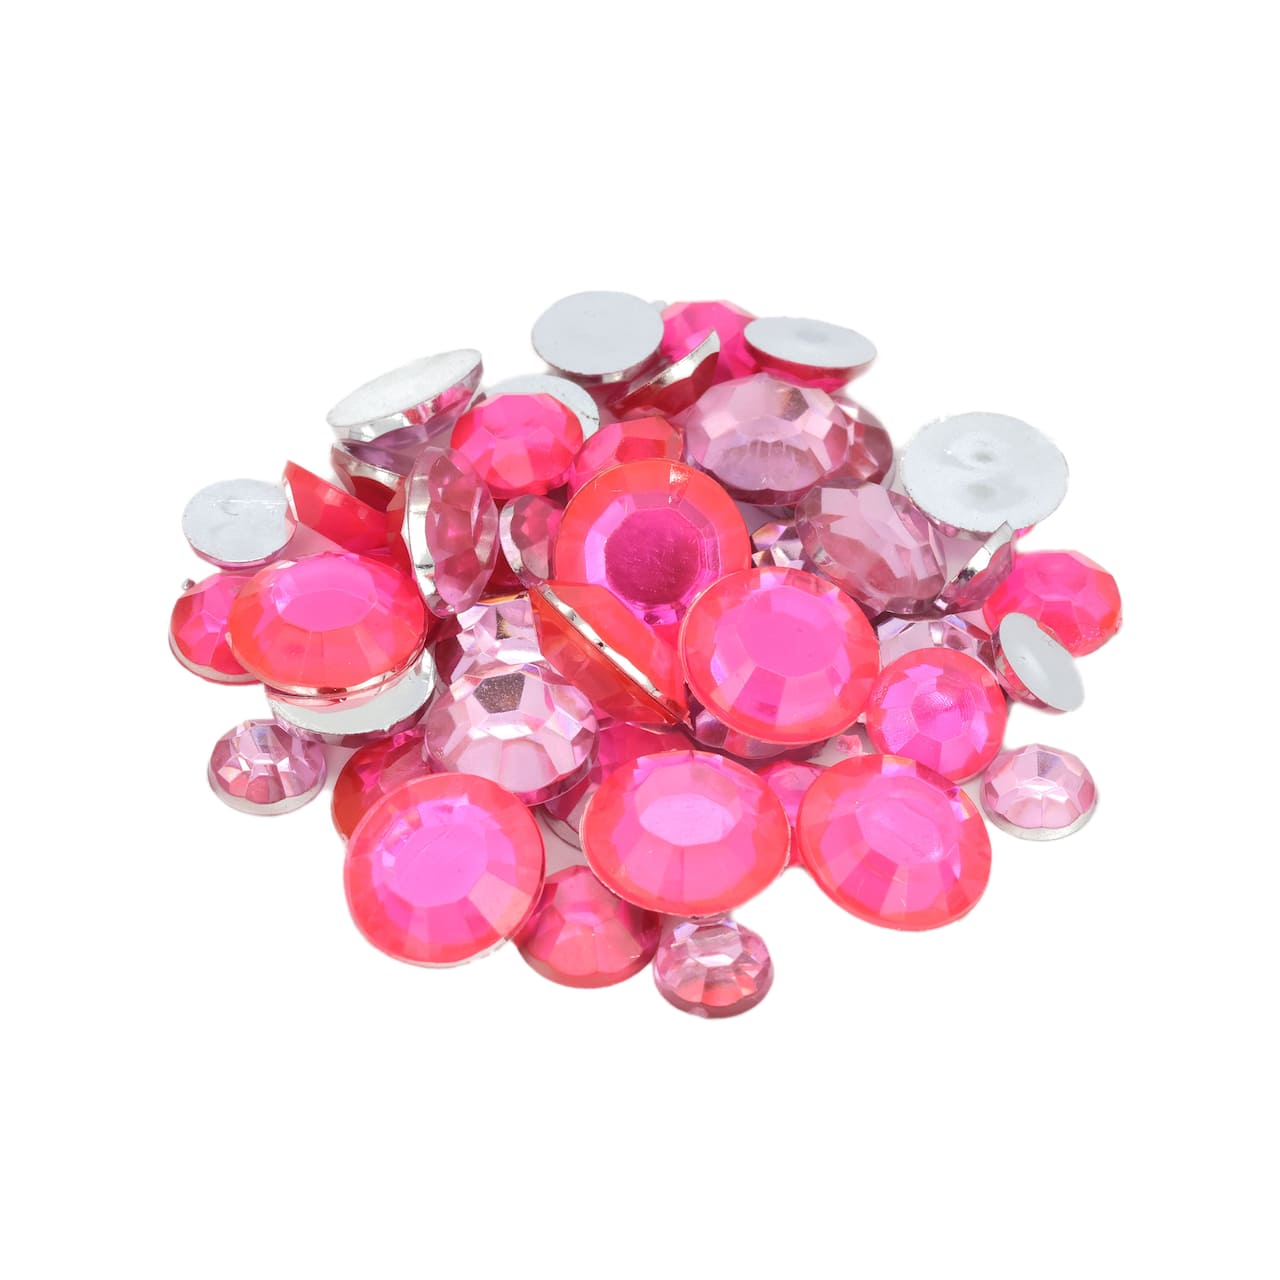 Dark & Light Pink Round Mix Gems by Creatology™